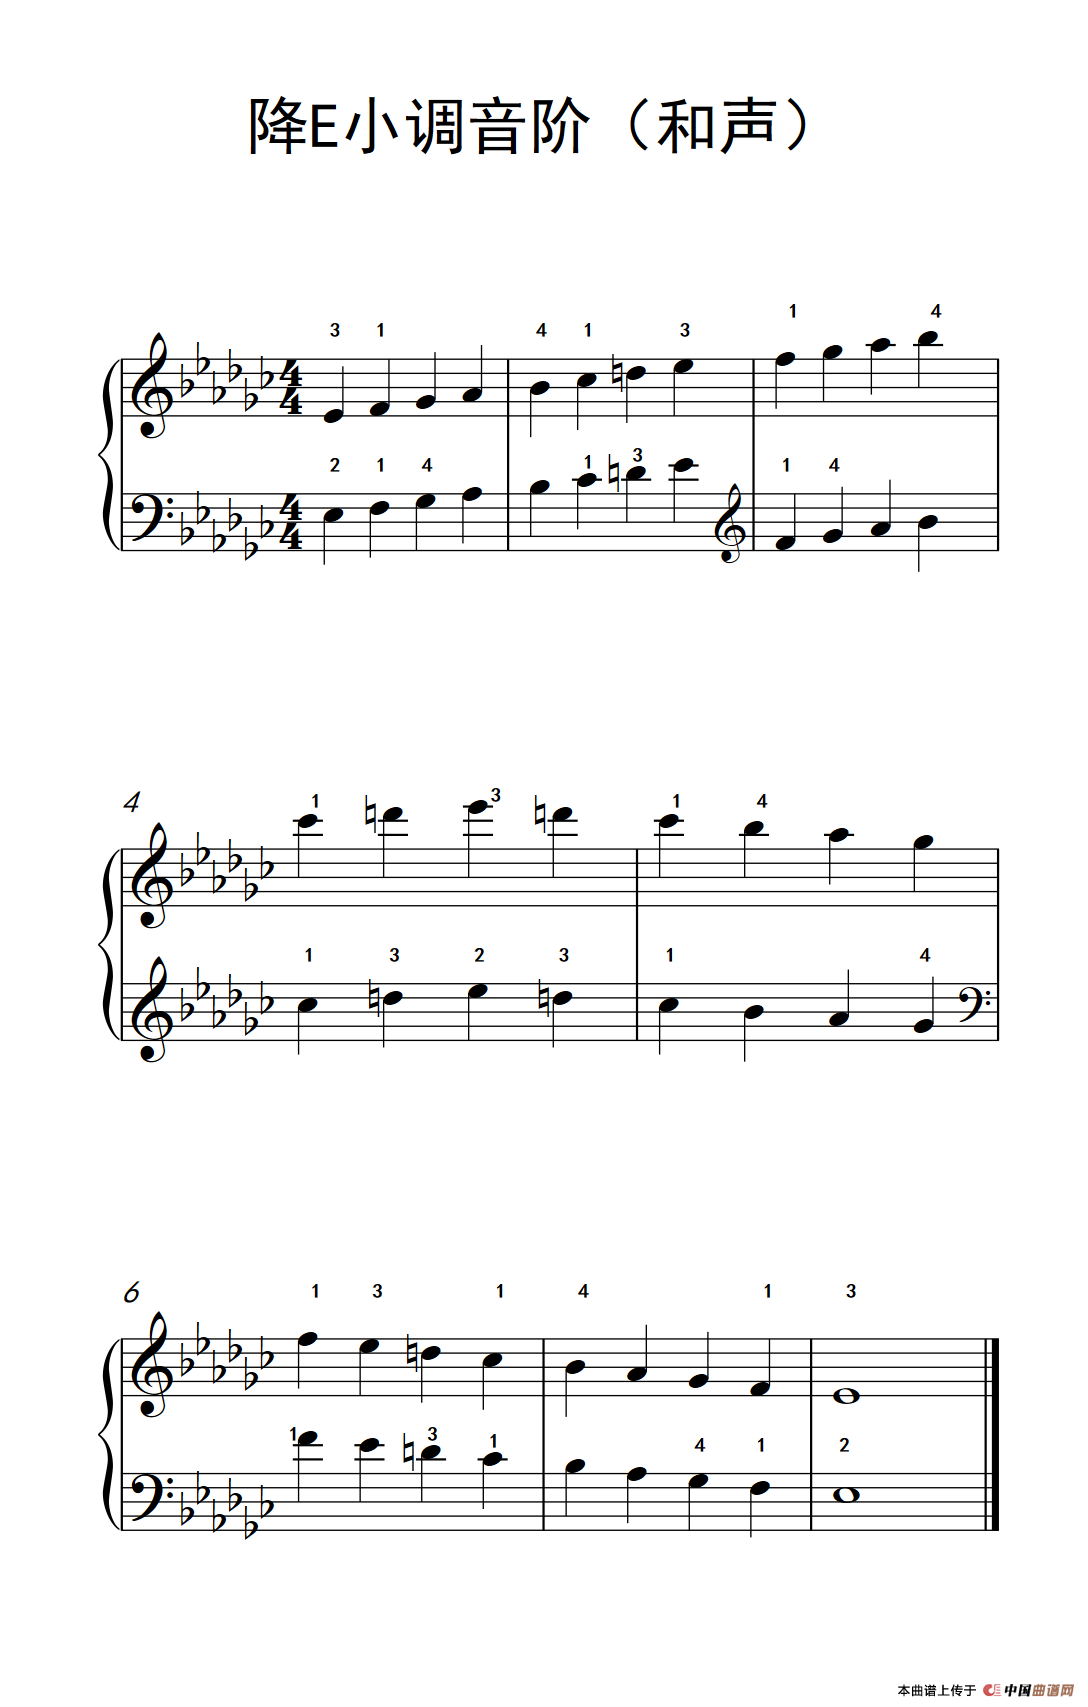 [钢琴谱] 降e小调音阶